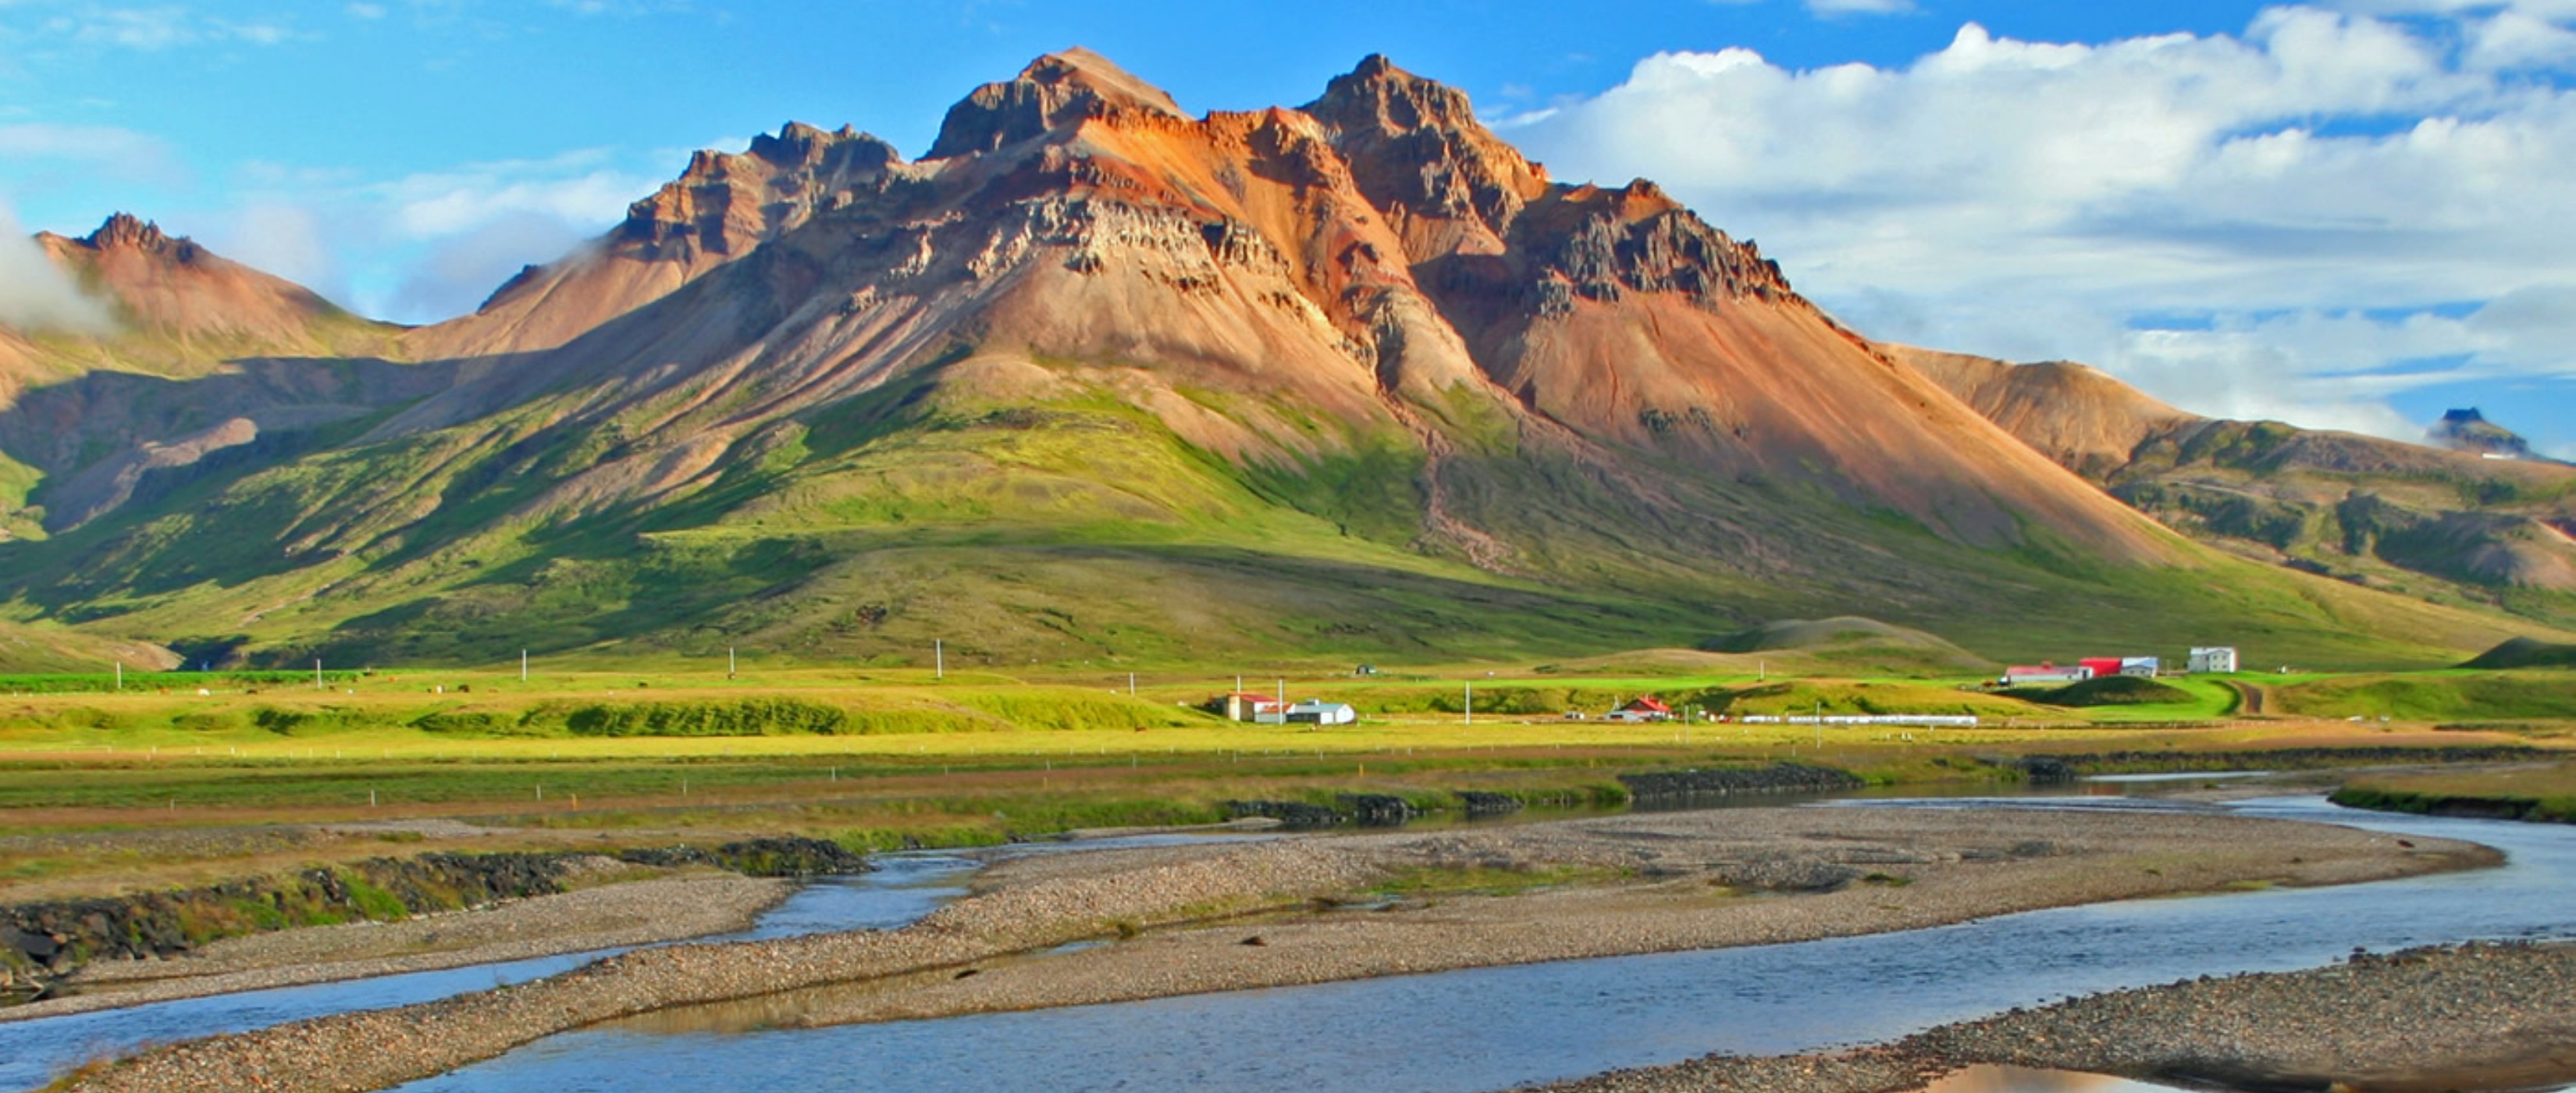 Island entdecken udn wandern rund um  - Lupe Reisen